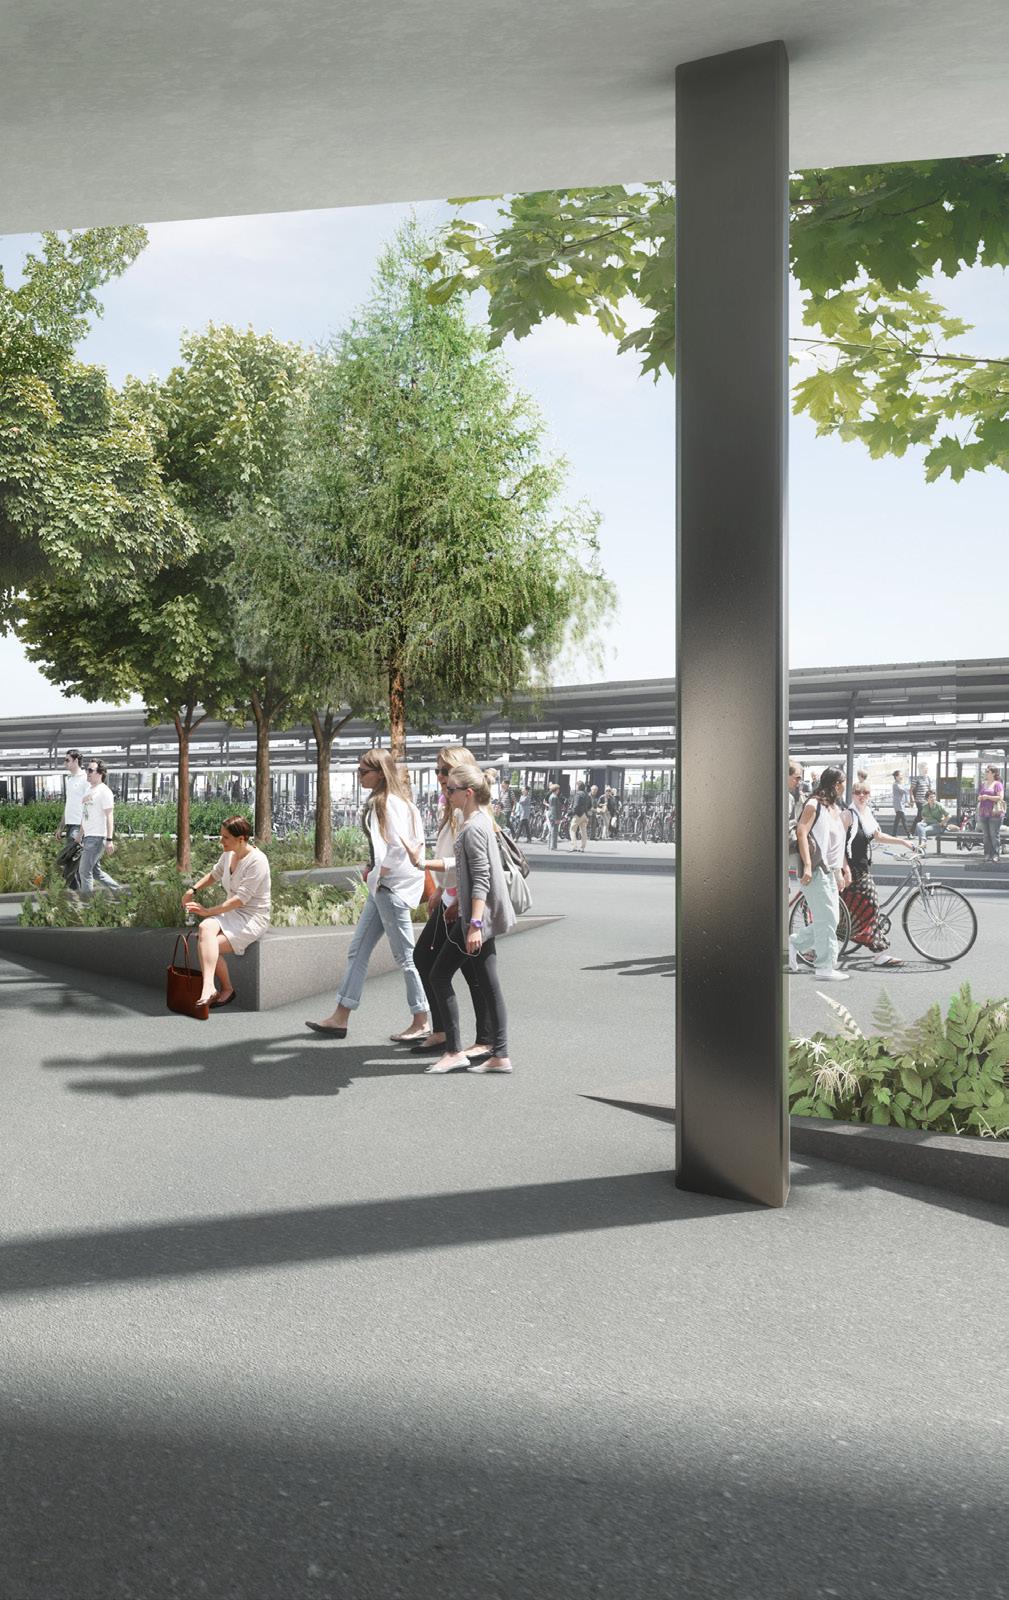 Lage: Hochwertiges Ambiente für innovative Geschäfte Der Bahnhofplatz von Pratteln, wo auch mehrere frequentierte Buslinien und in der Nähe die Basler Tramlinie 14 halten, wird komplett neu gestaltet.